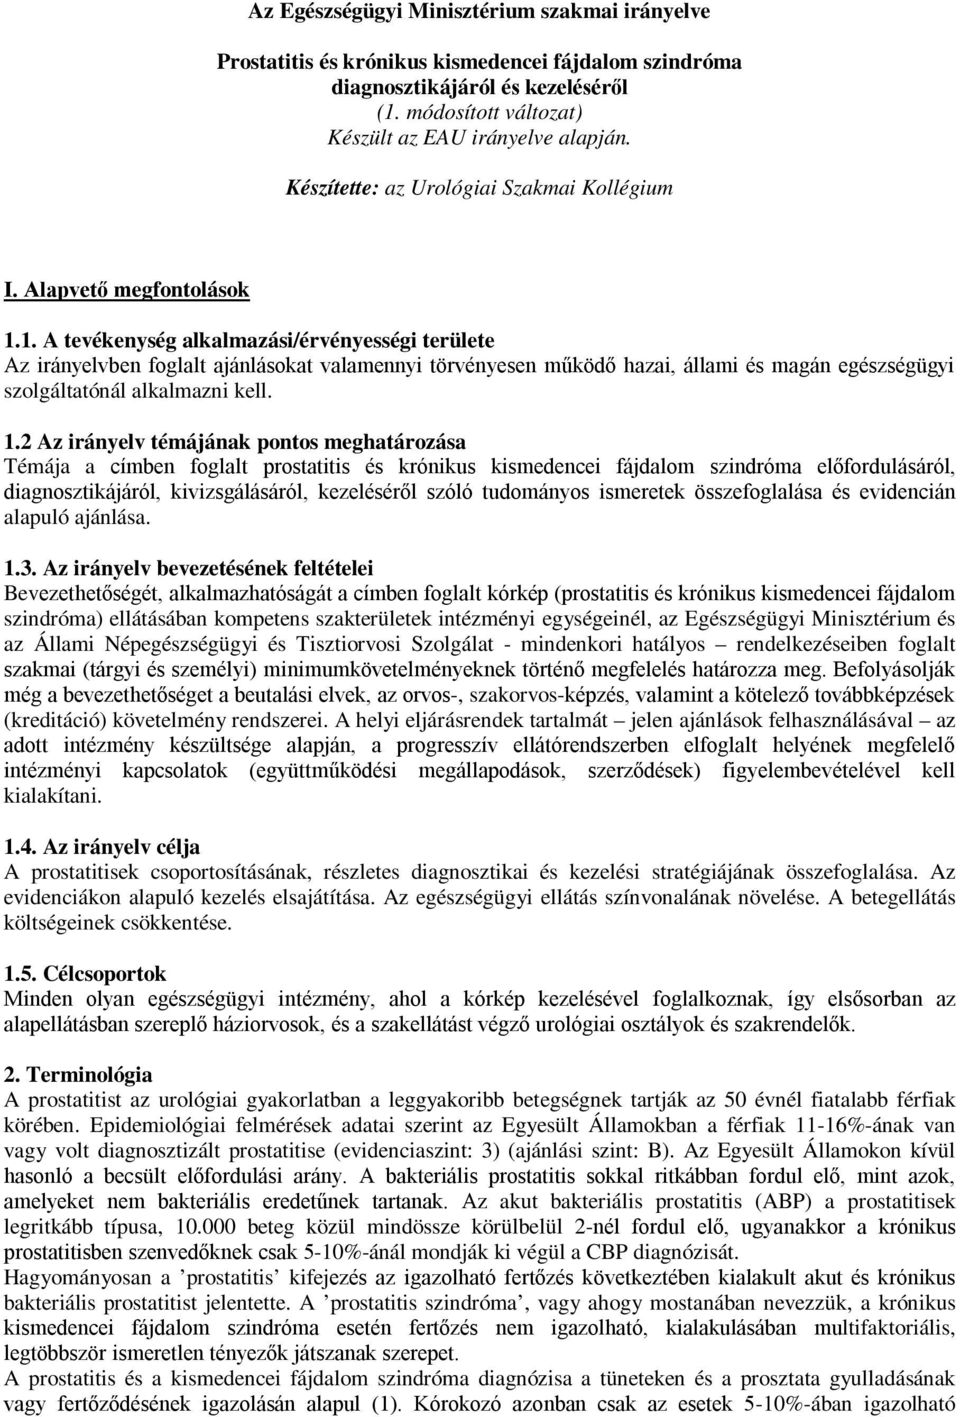 Modern prosztatitis kezelési elvek)